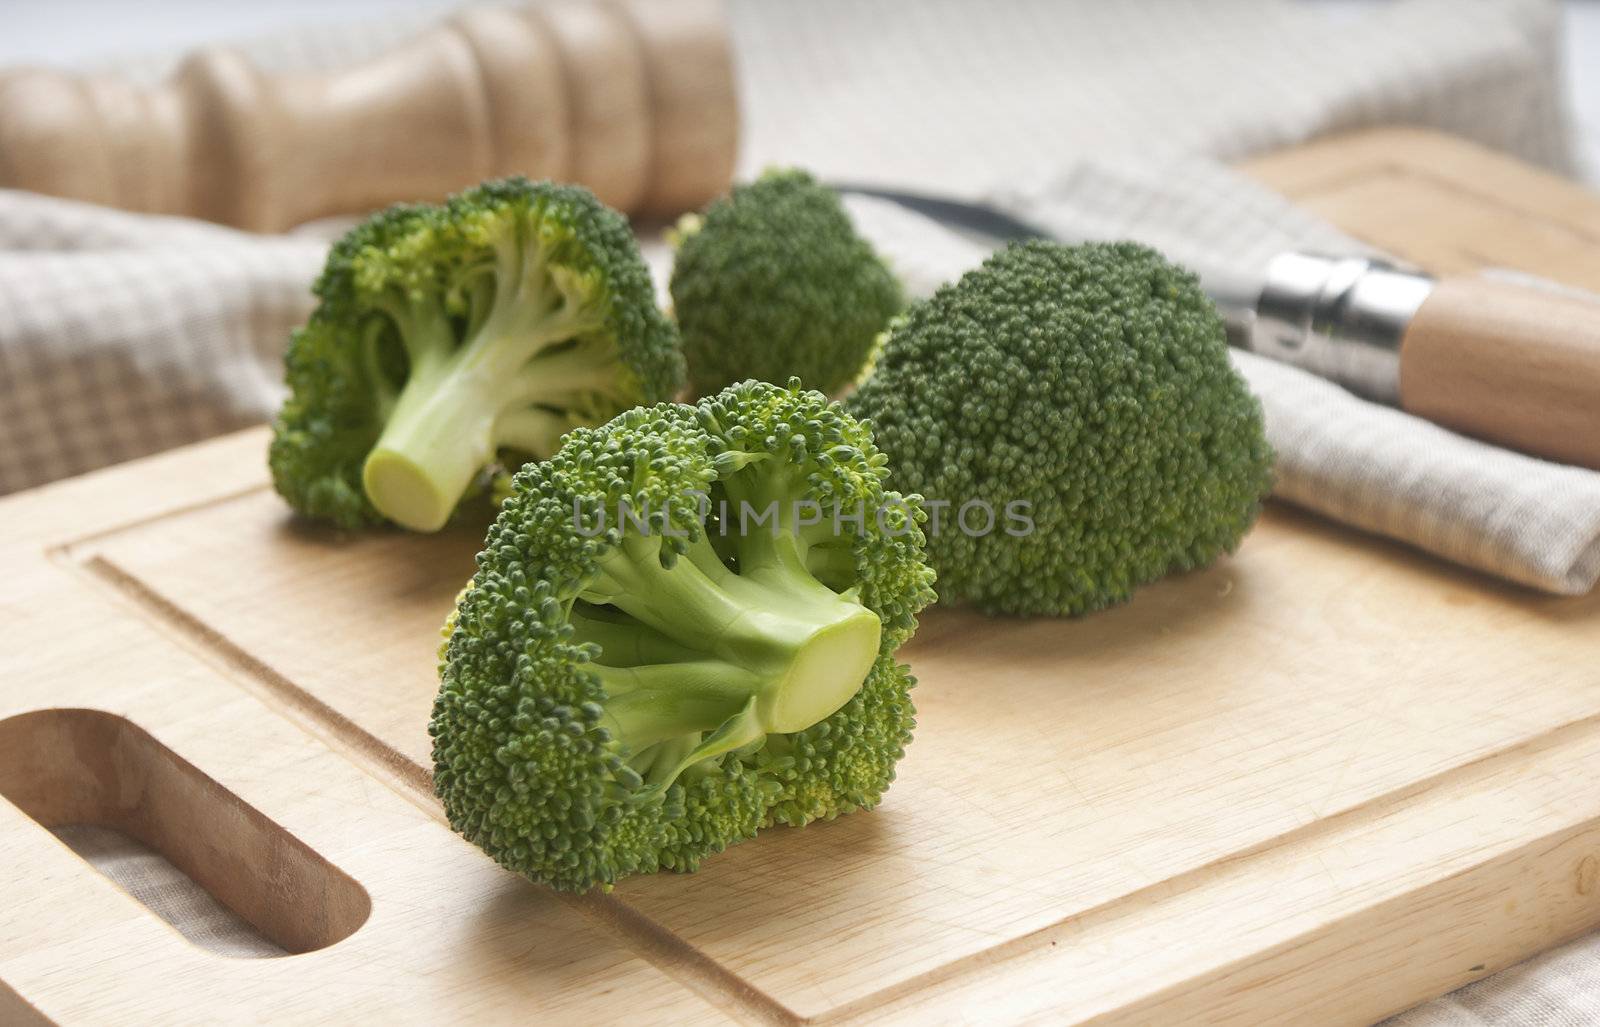 Broccoli by Angorius